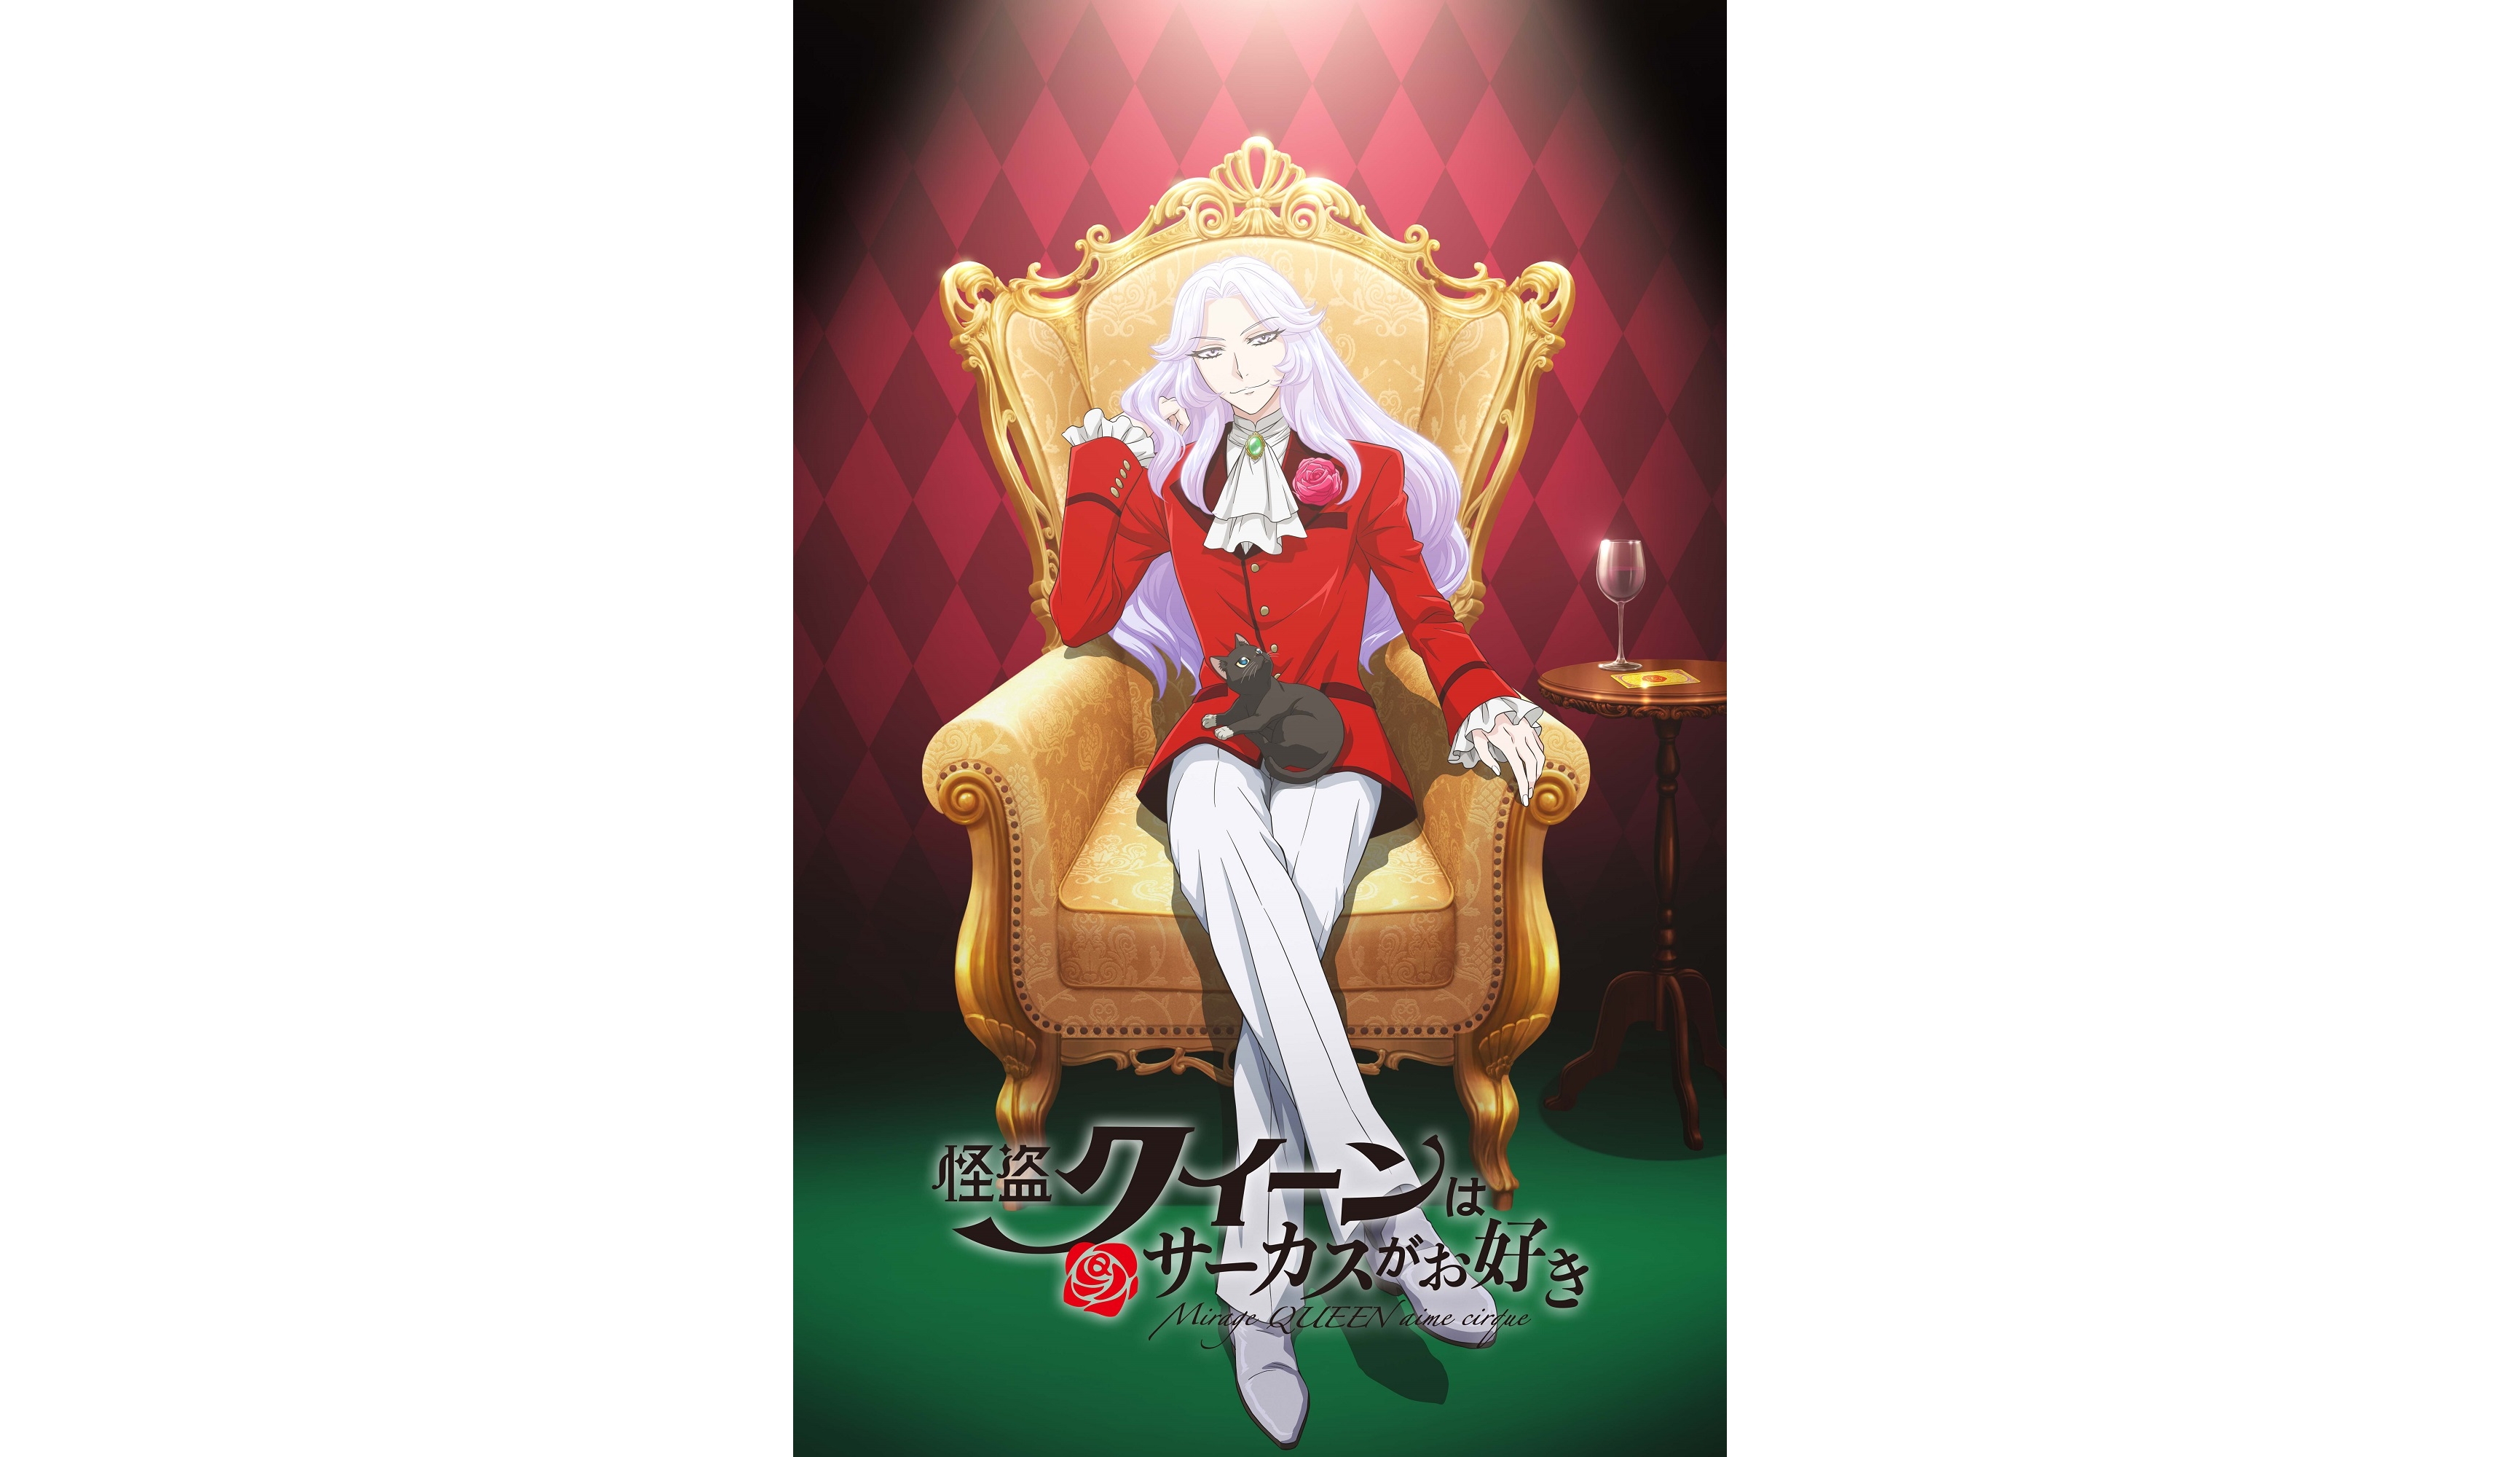 Underworld Queen - Anime Cool Wallpapers and Images - Desktop Nexus Groups-demhanvico.com.vn